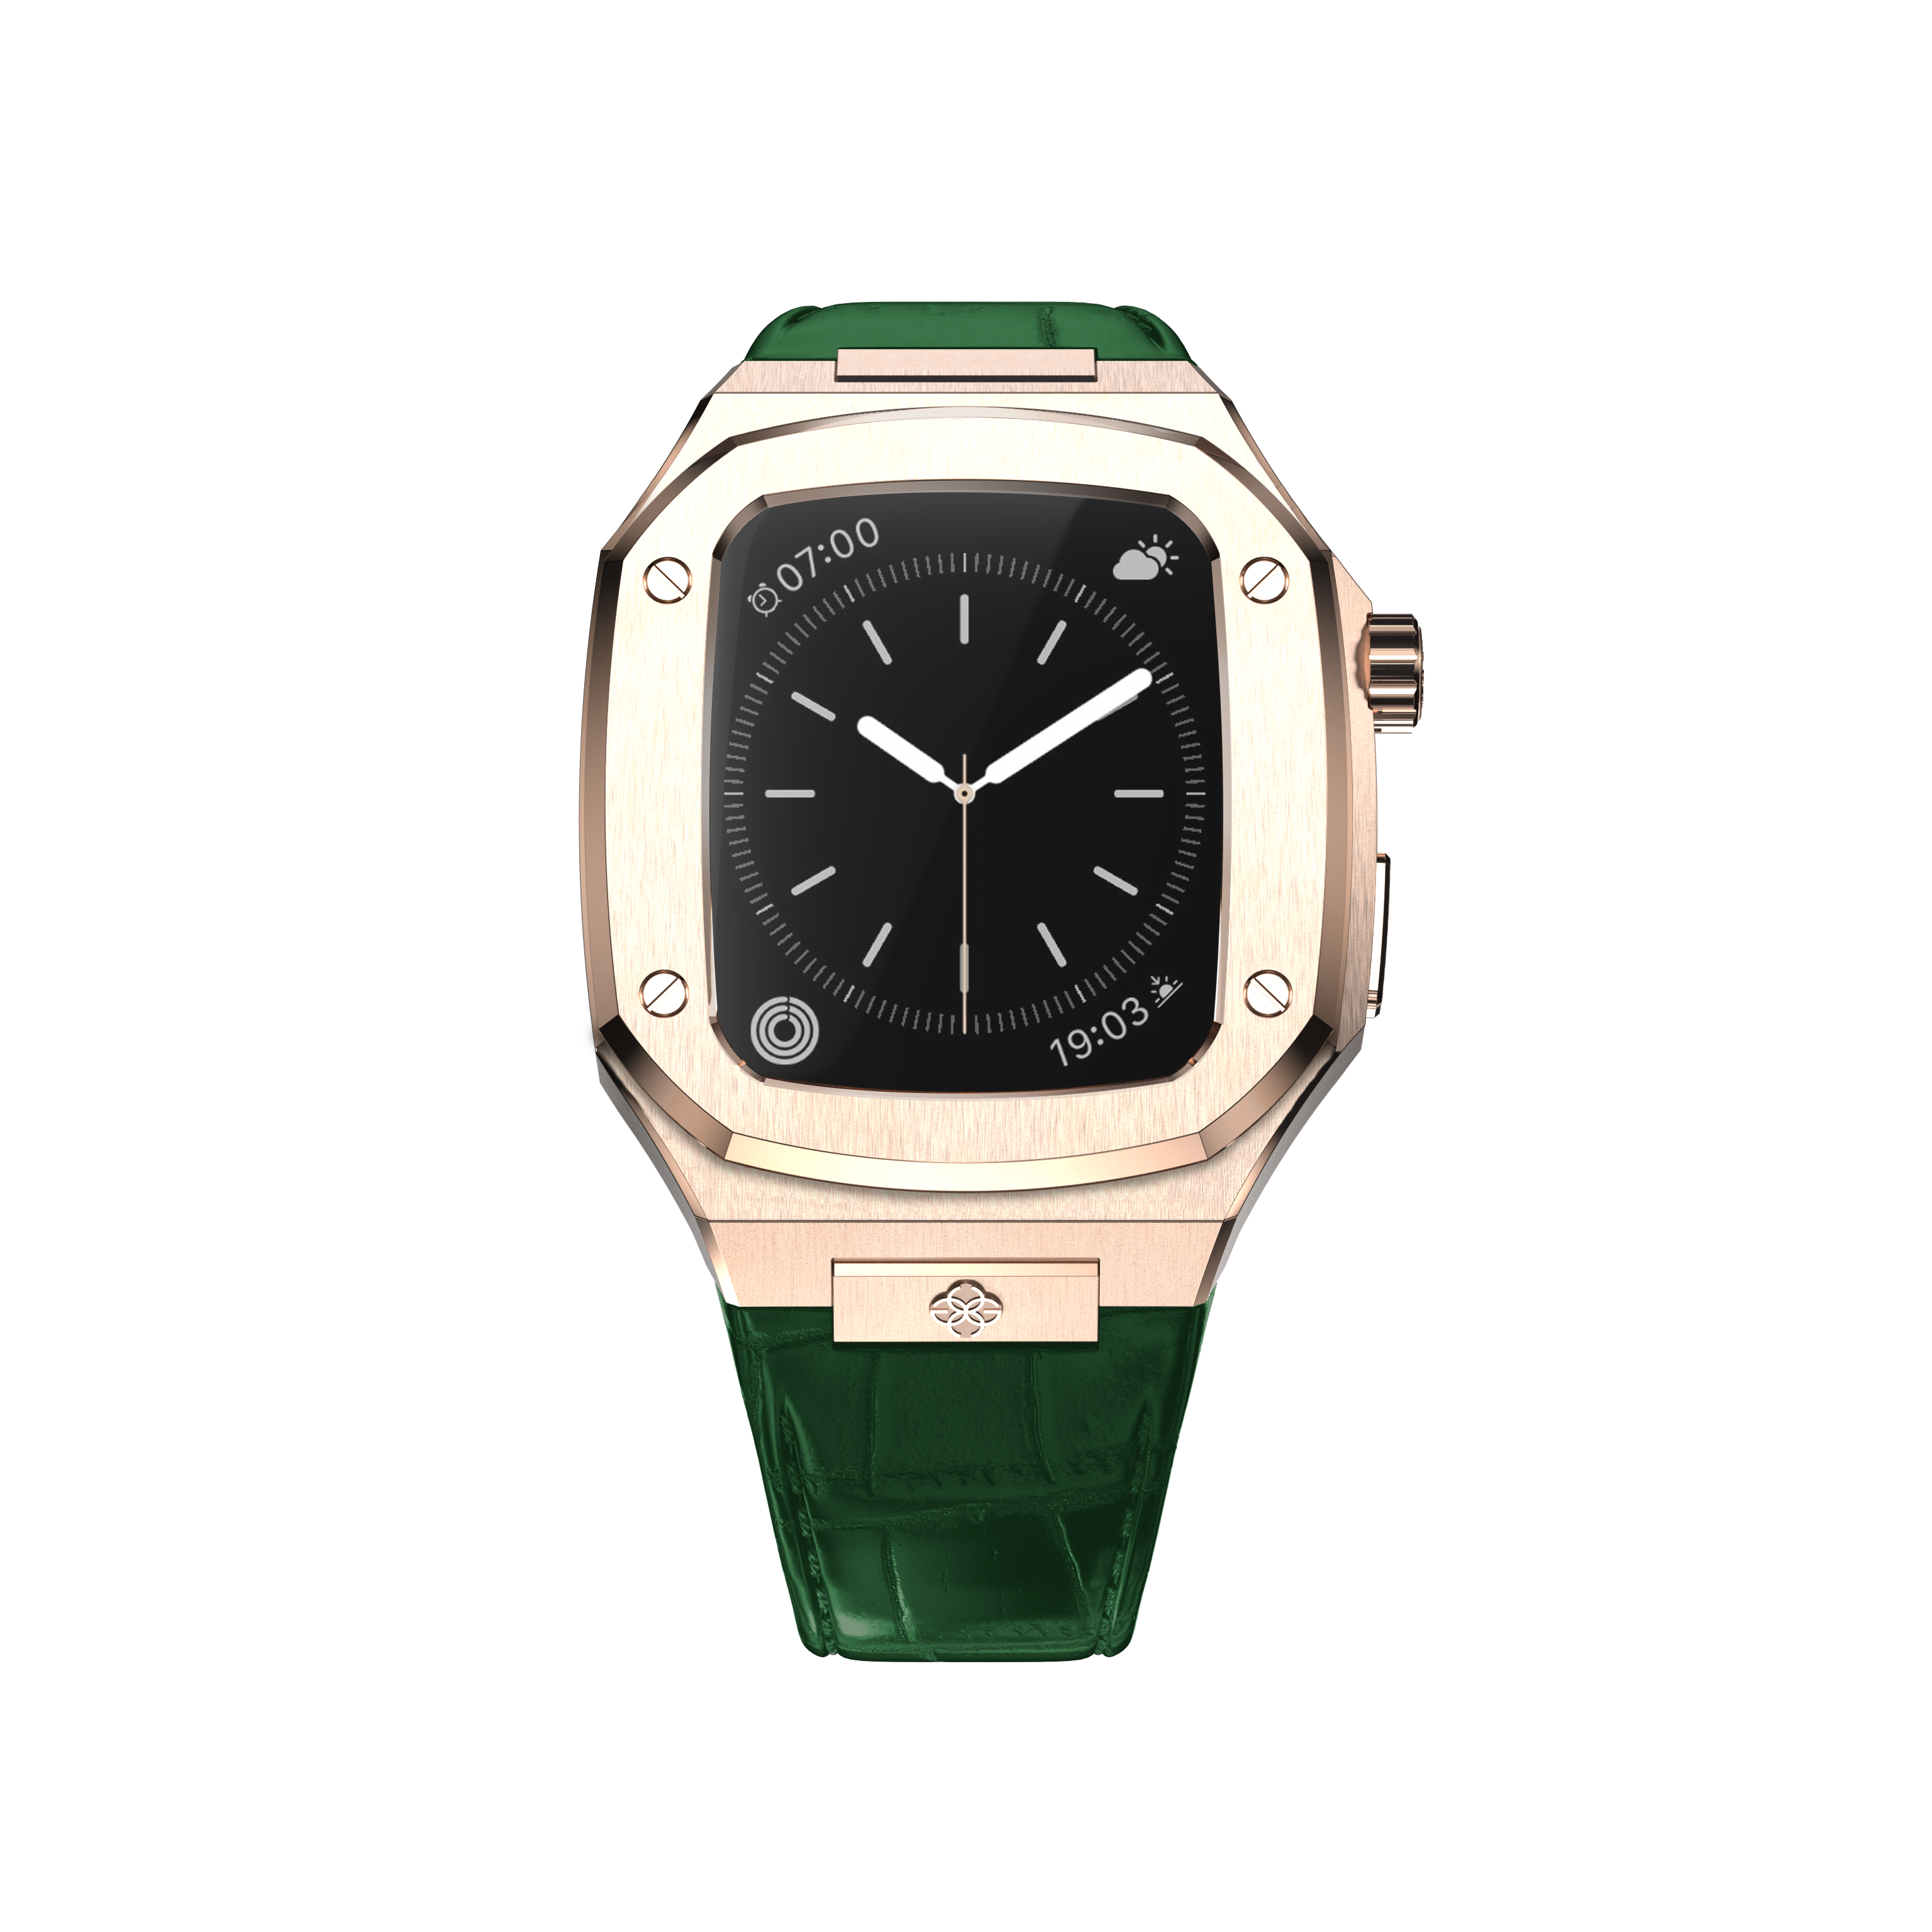 Чехол Golden Concept WC-CL44-RG-GR для смарт-часов Apple Watch Series 6 44mm зеленый